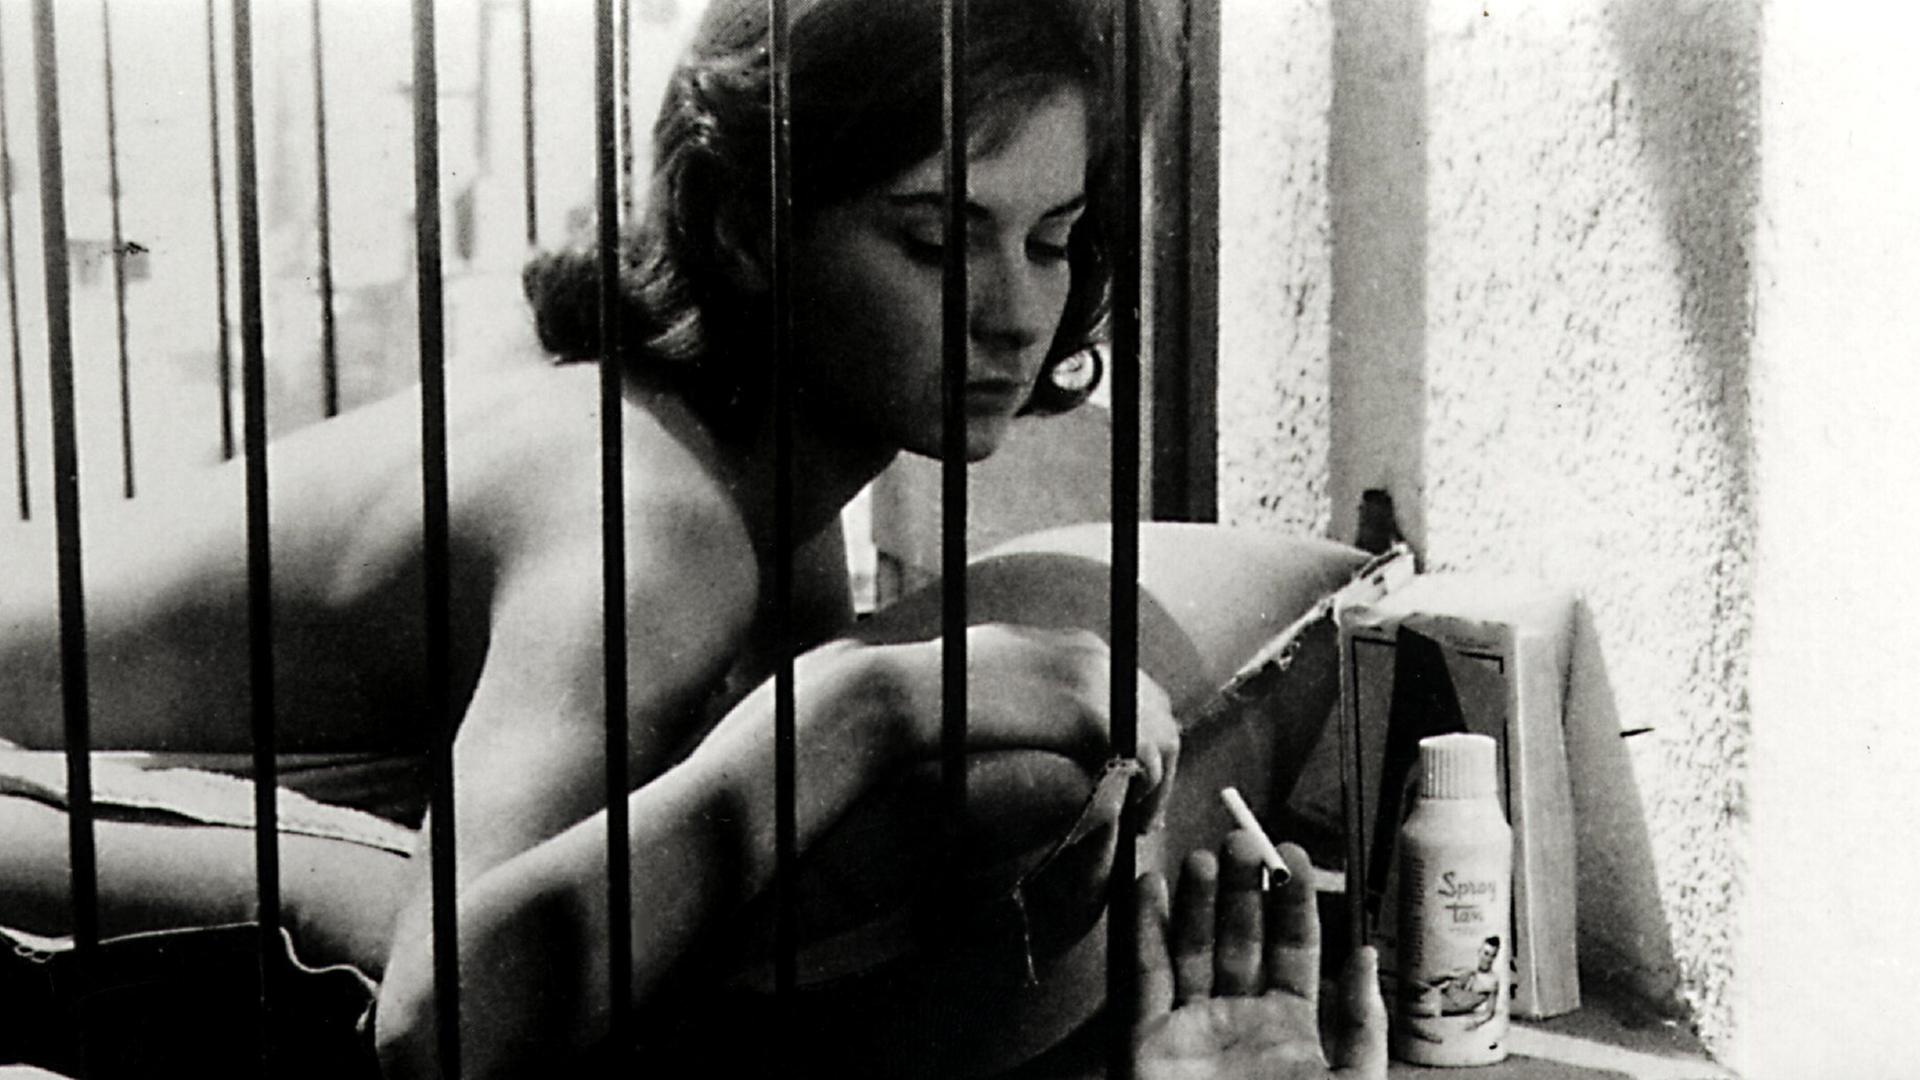 Juliette Mayniel liegt mit nacktem Oberkörper auf einer Matratze hinter Gittern. Jemand reicht ihr eine Zigarette.